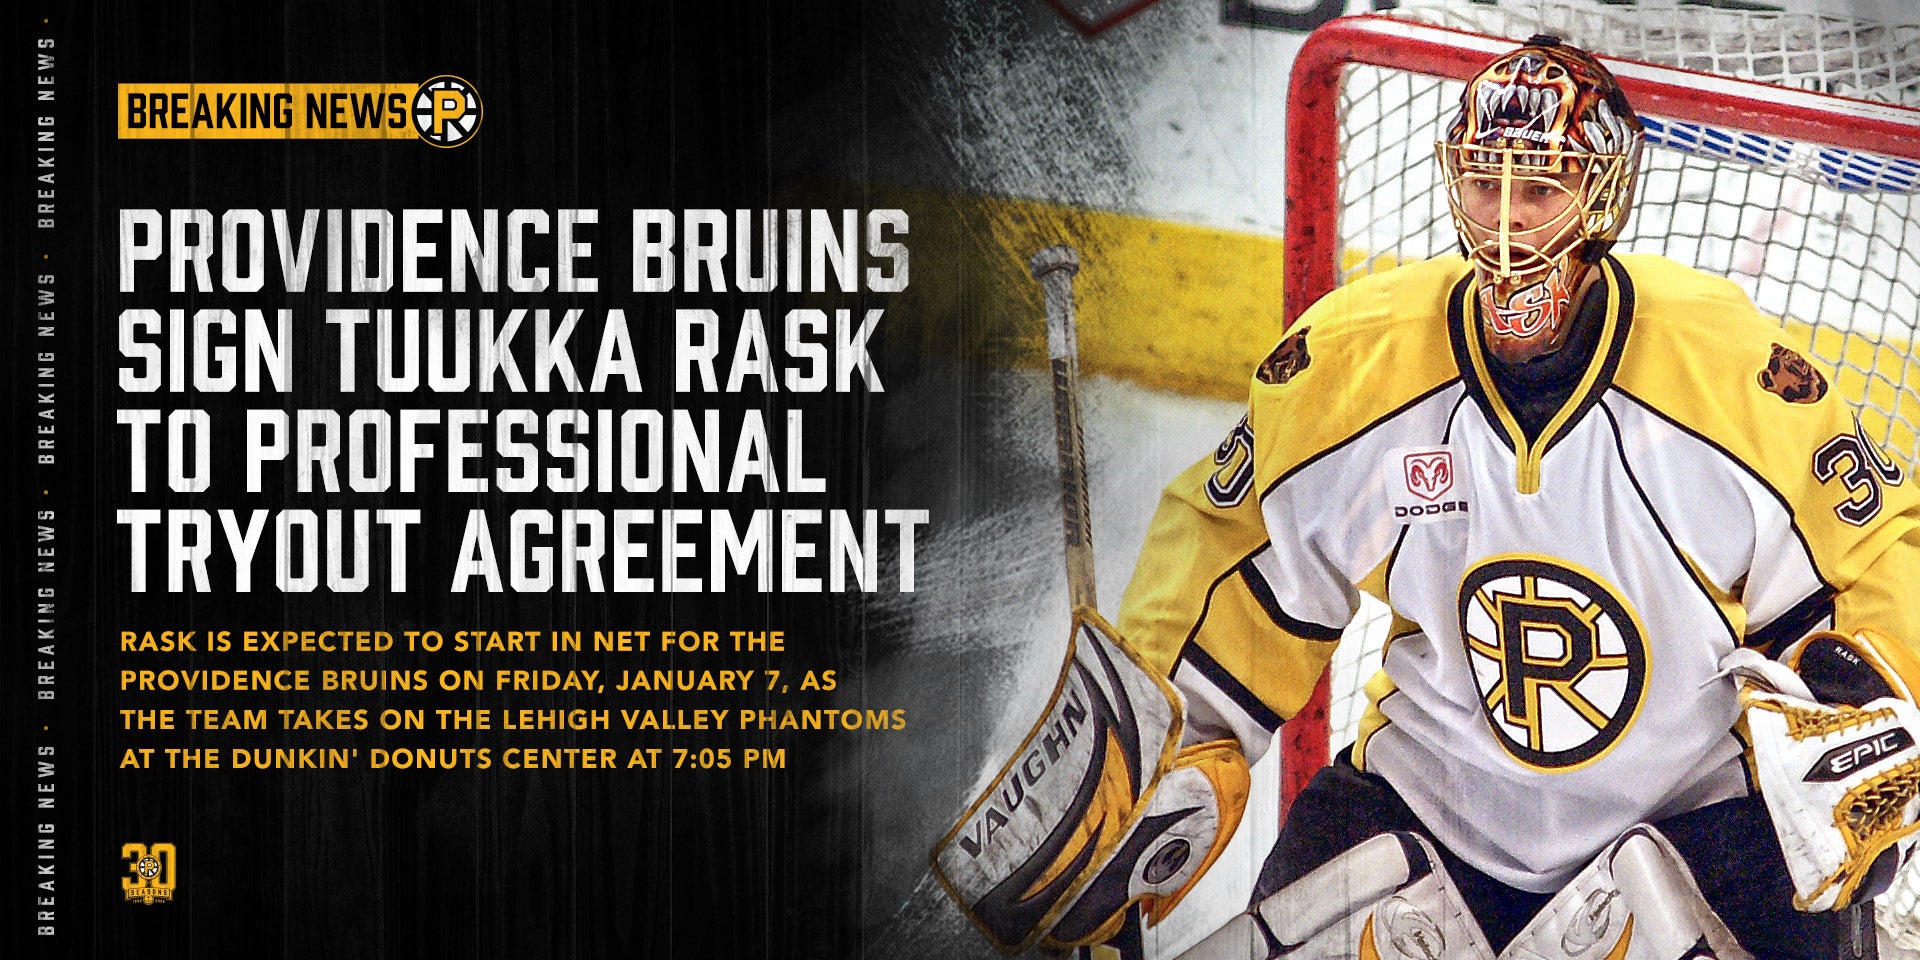 Bruins honor retired goalie Tuukka Rask in emotional pregame ceremony